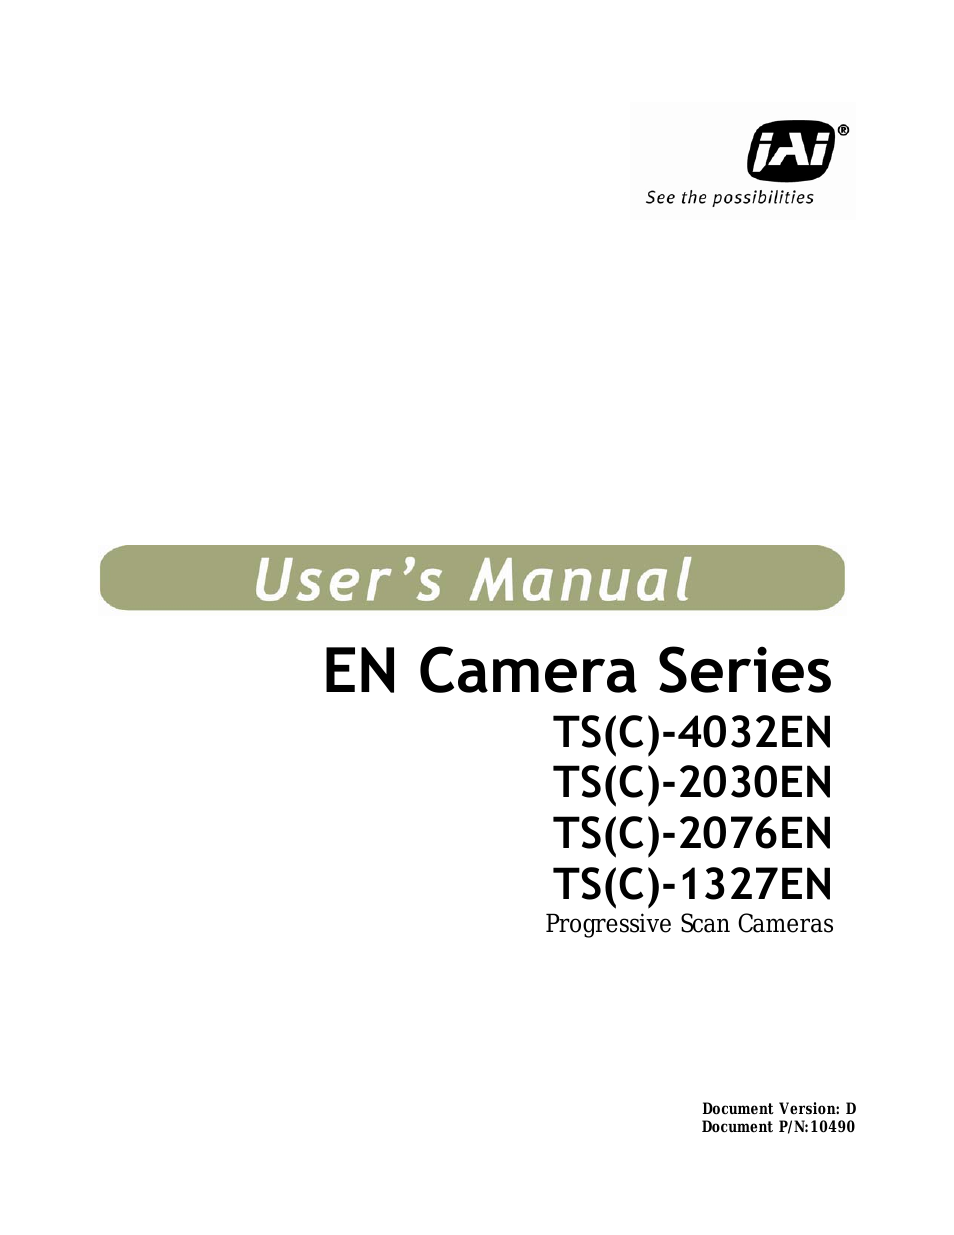 EN Series Cameras TS(C)-2030EN